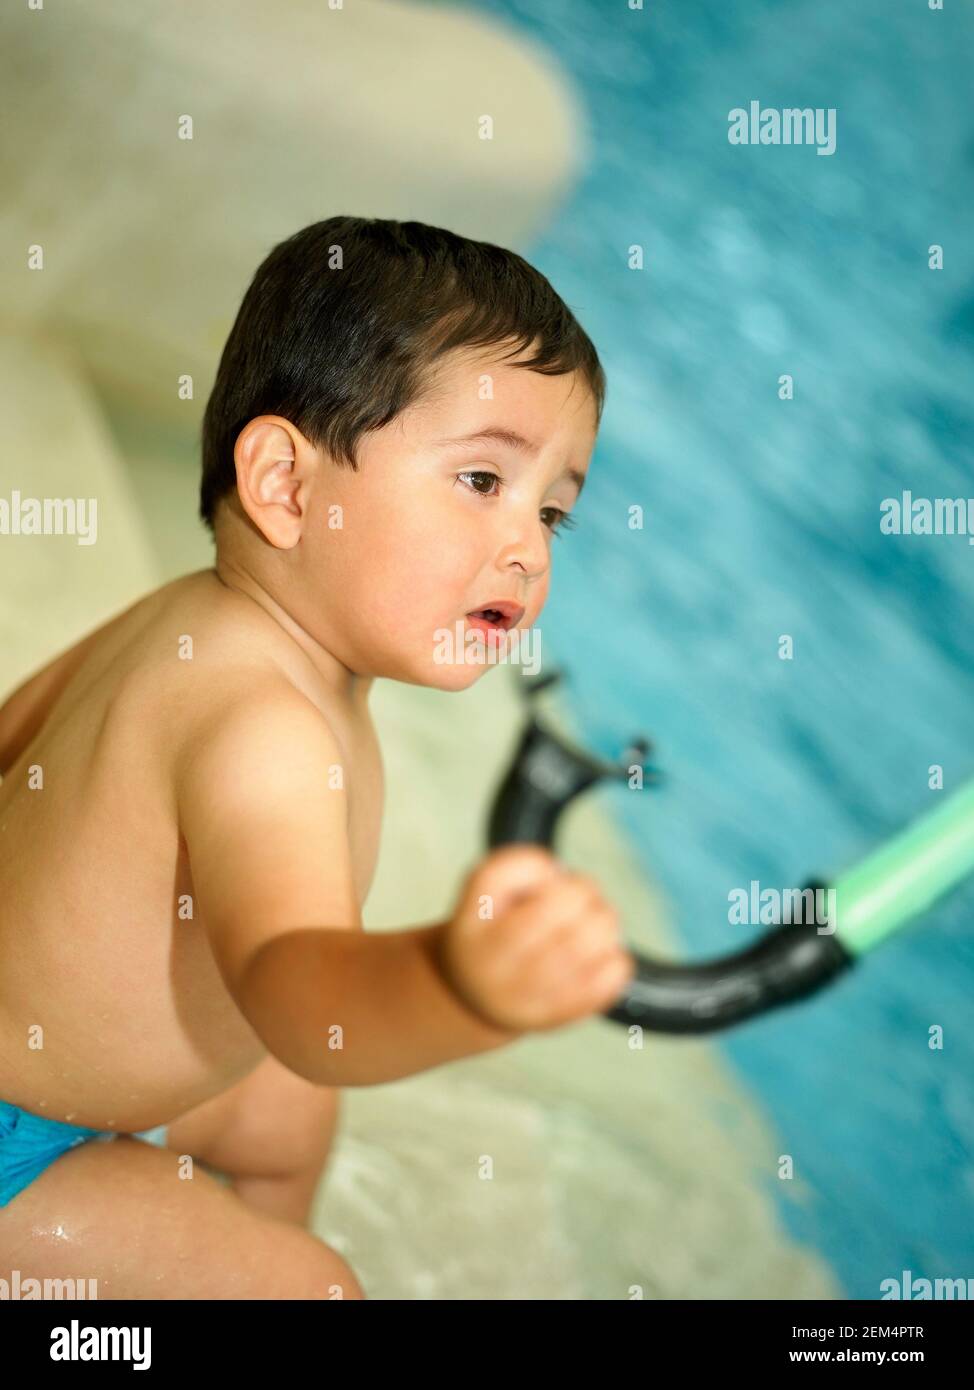 Seitenprofil eines kleinen Jungen, der einen Schnorchel hält und Sitzen in der Nähe eines Swimmingpools Stockfoto